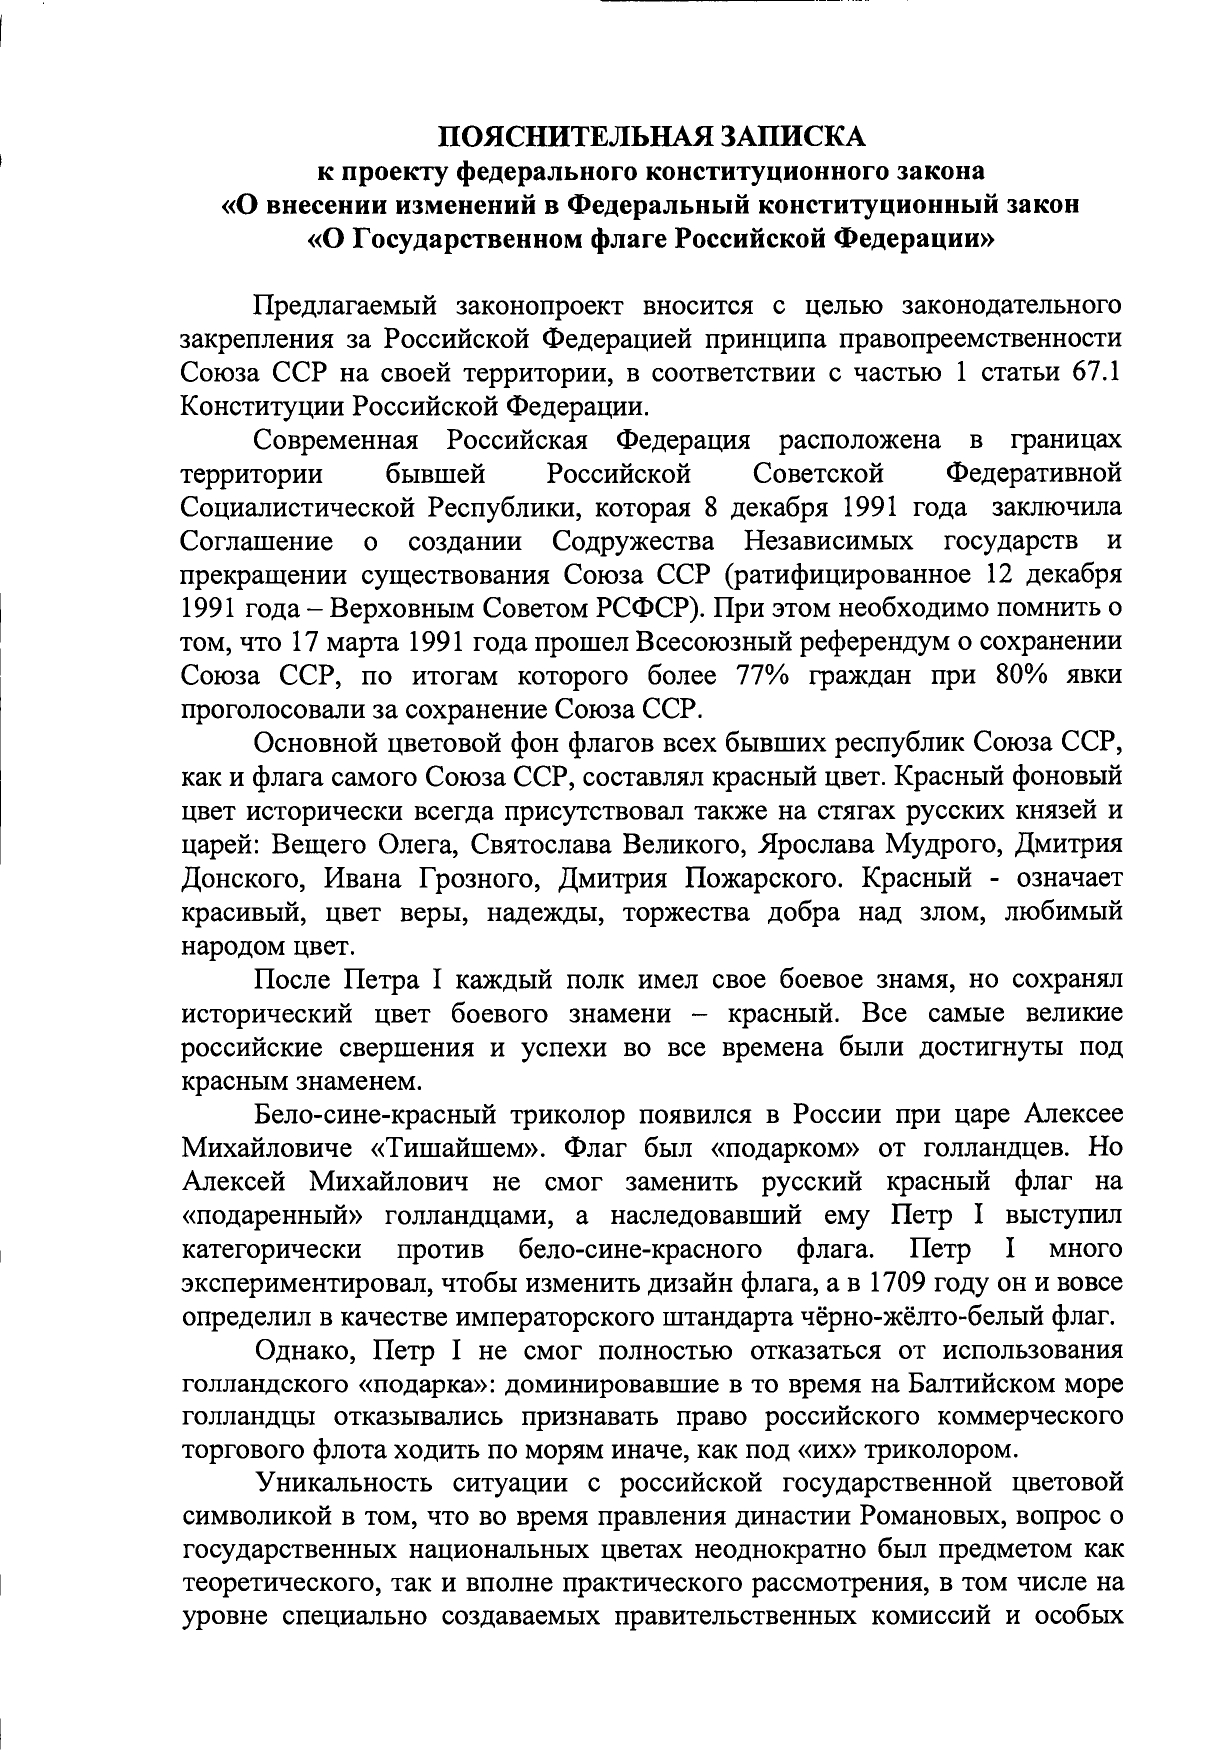 пояснительная записка к законопроекту о замене триколора на красный флаг СССР